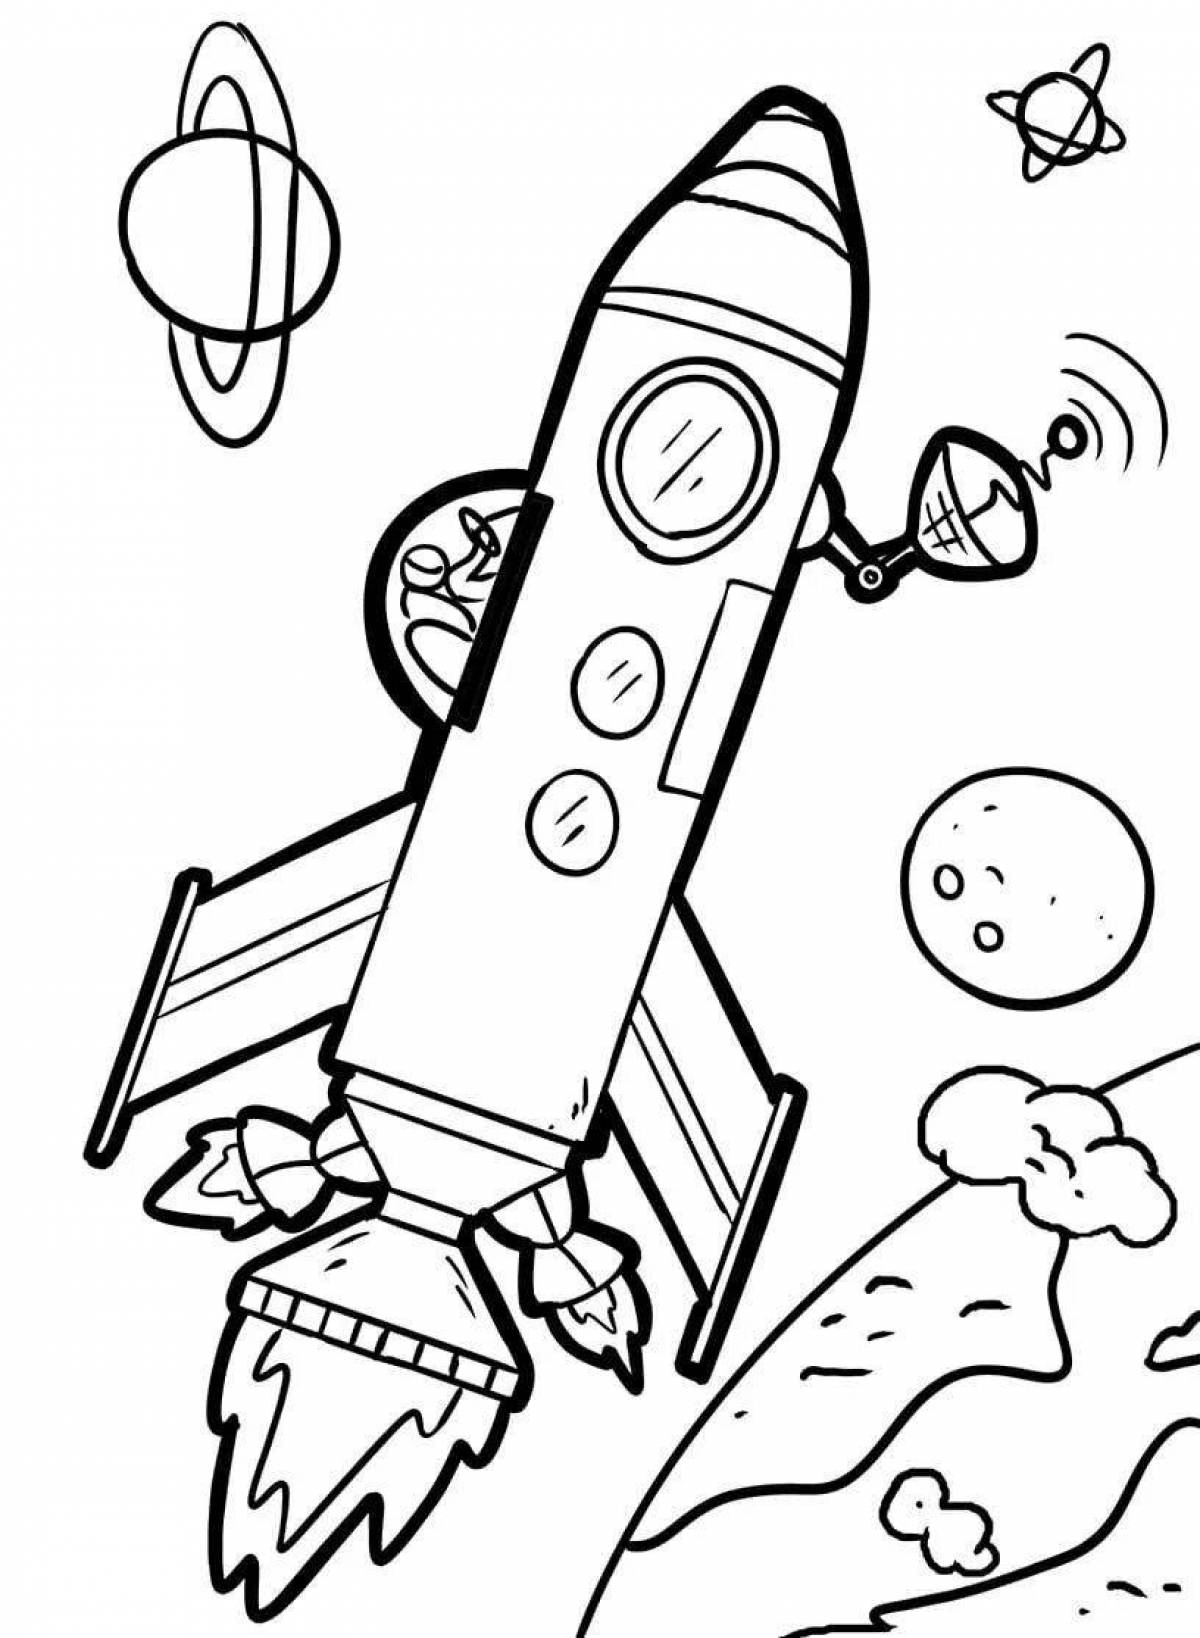 Fun rocket coloring page